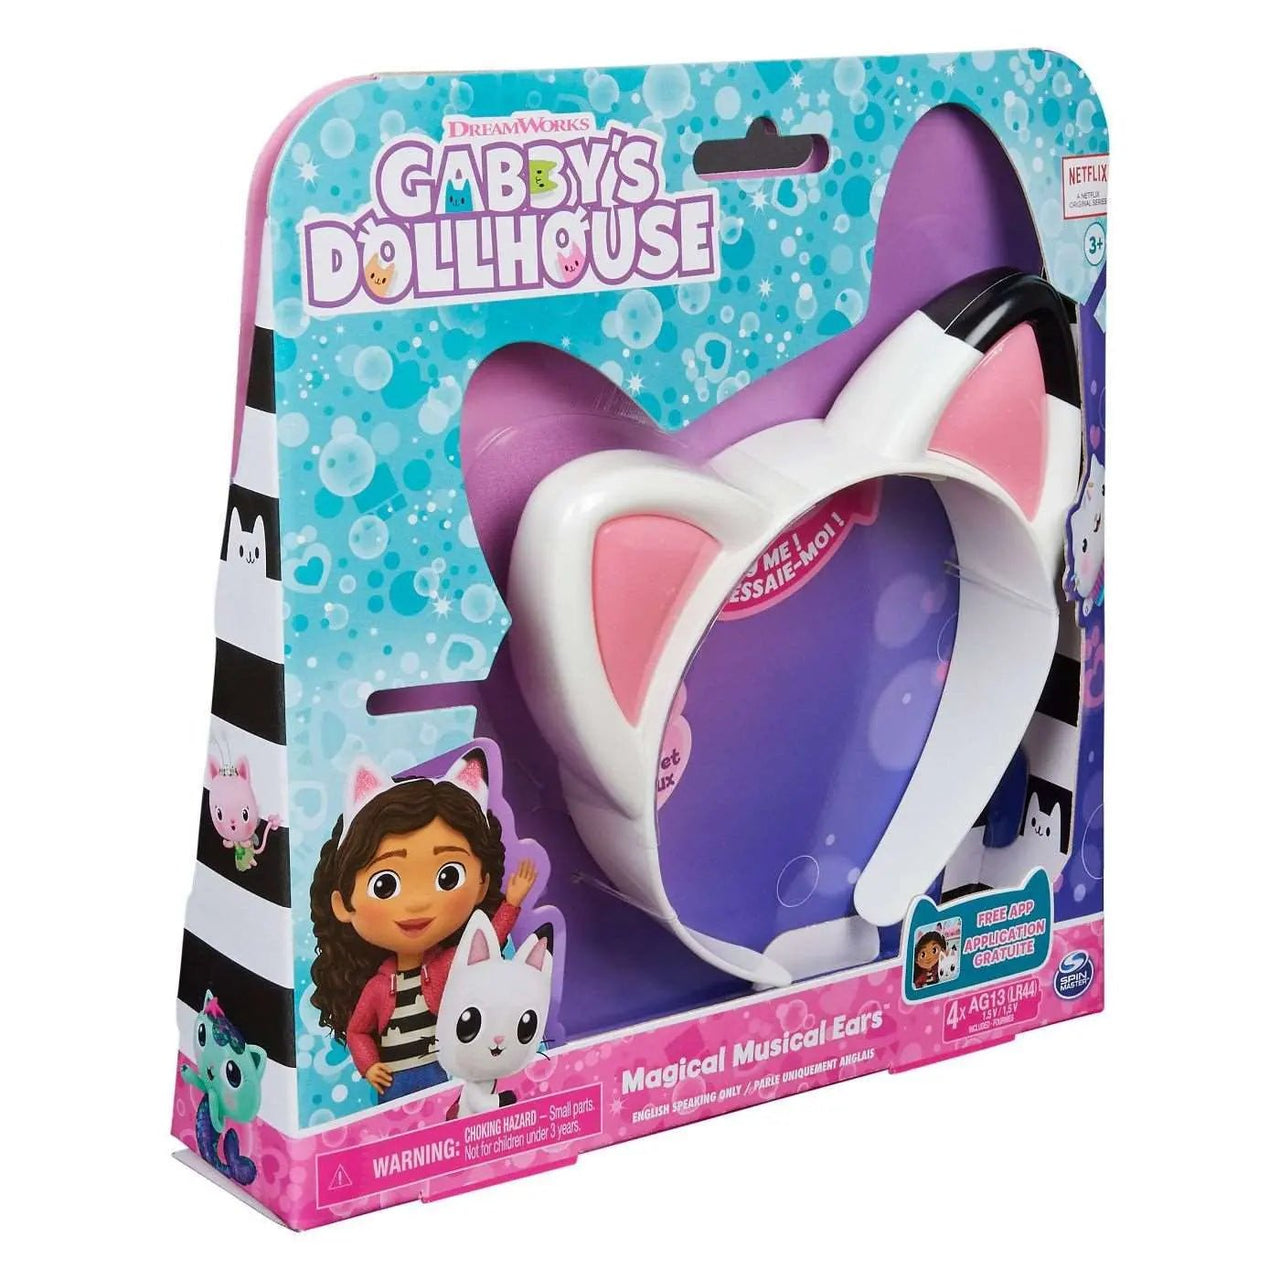 Gabby's Dollhouse Interactive Magical Musical Ears Gabby's Dollhouse